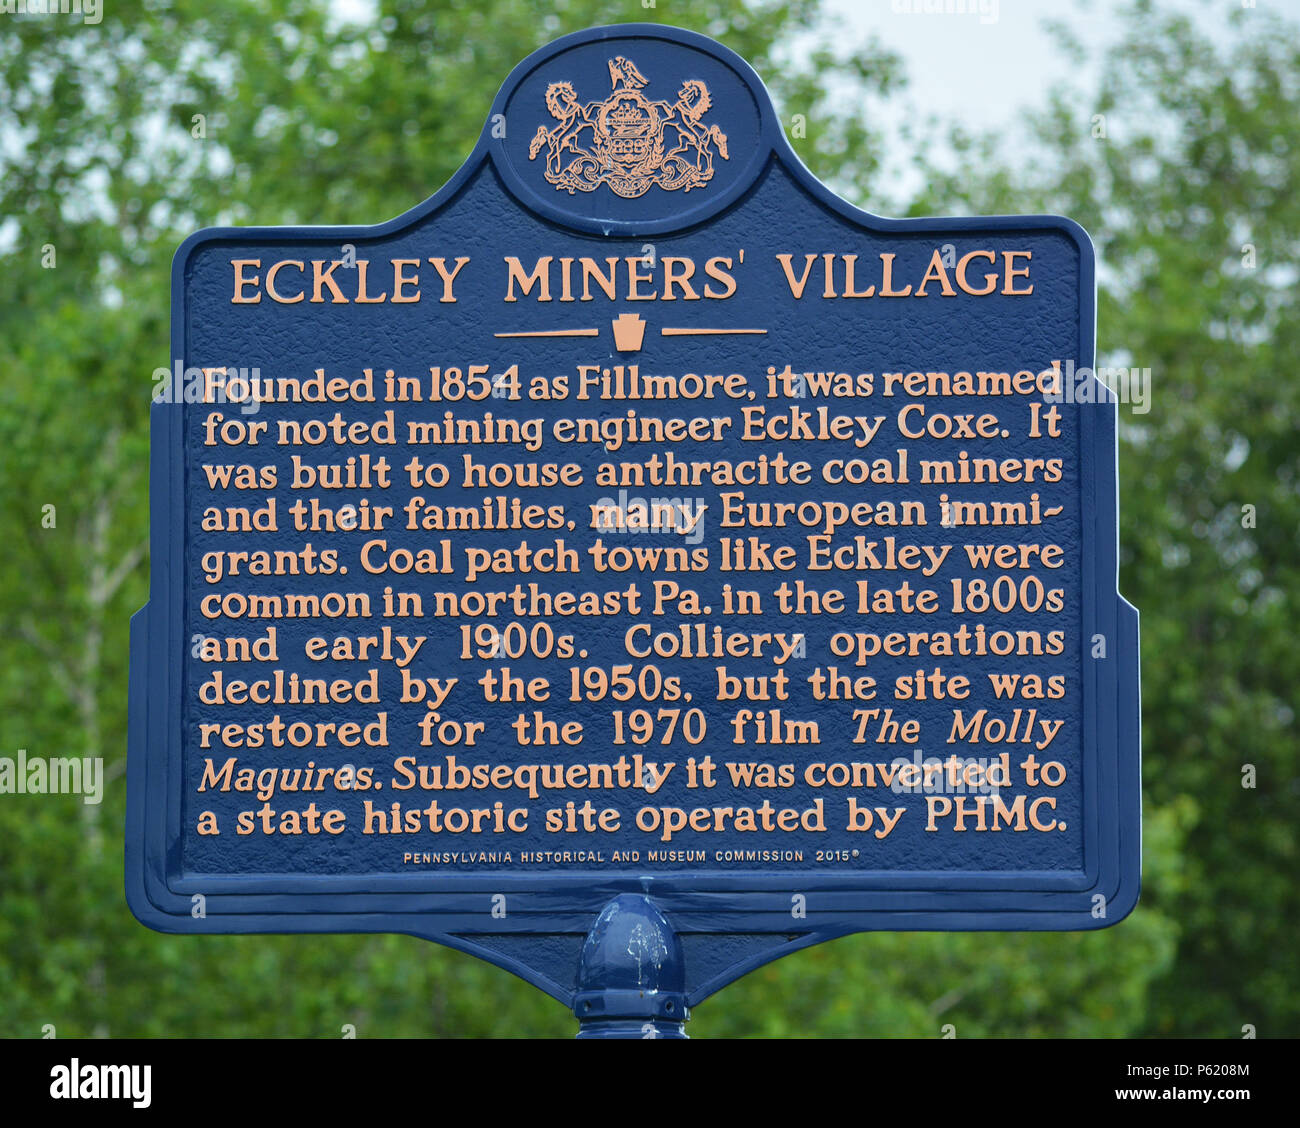 Eckley Village des mineurs dans l'est de la Pennsylvanie est une ville minière de charbon anthracite patch situé près de Hazleton, Luzerne Comté, aux États-Unis. Banque D'Images